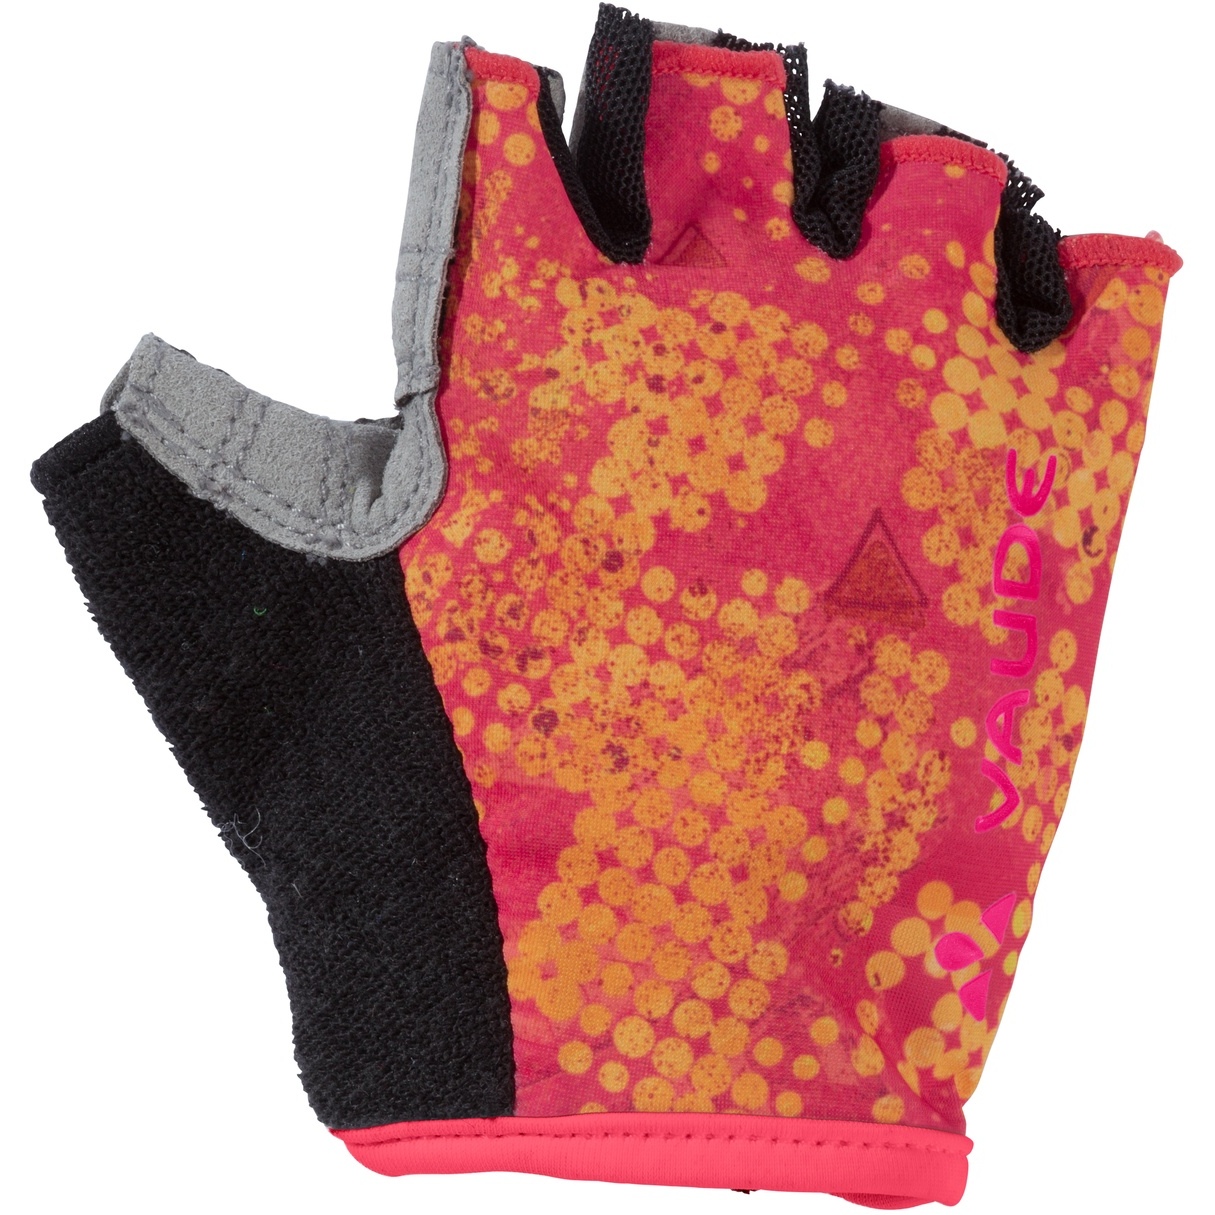 Produktbild von Vaude Grody Kinder Handschuhe - bright pink